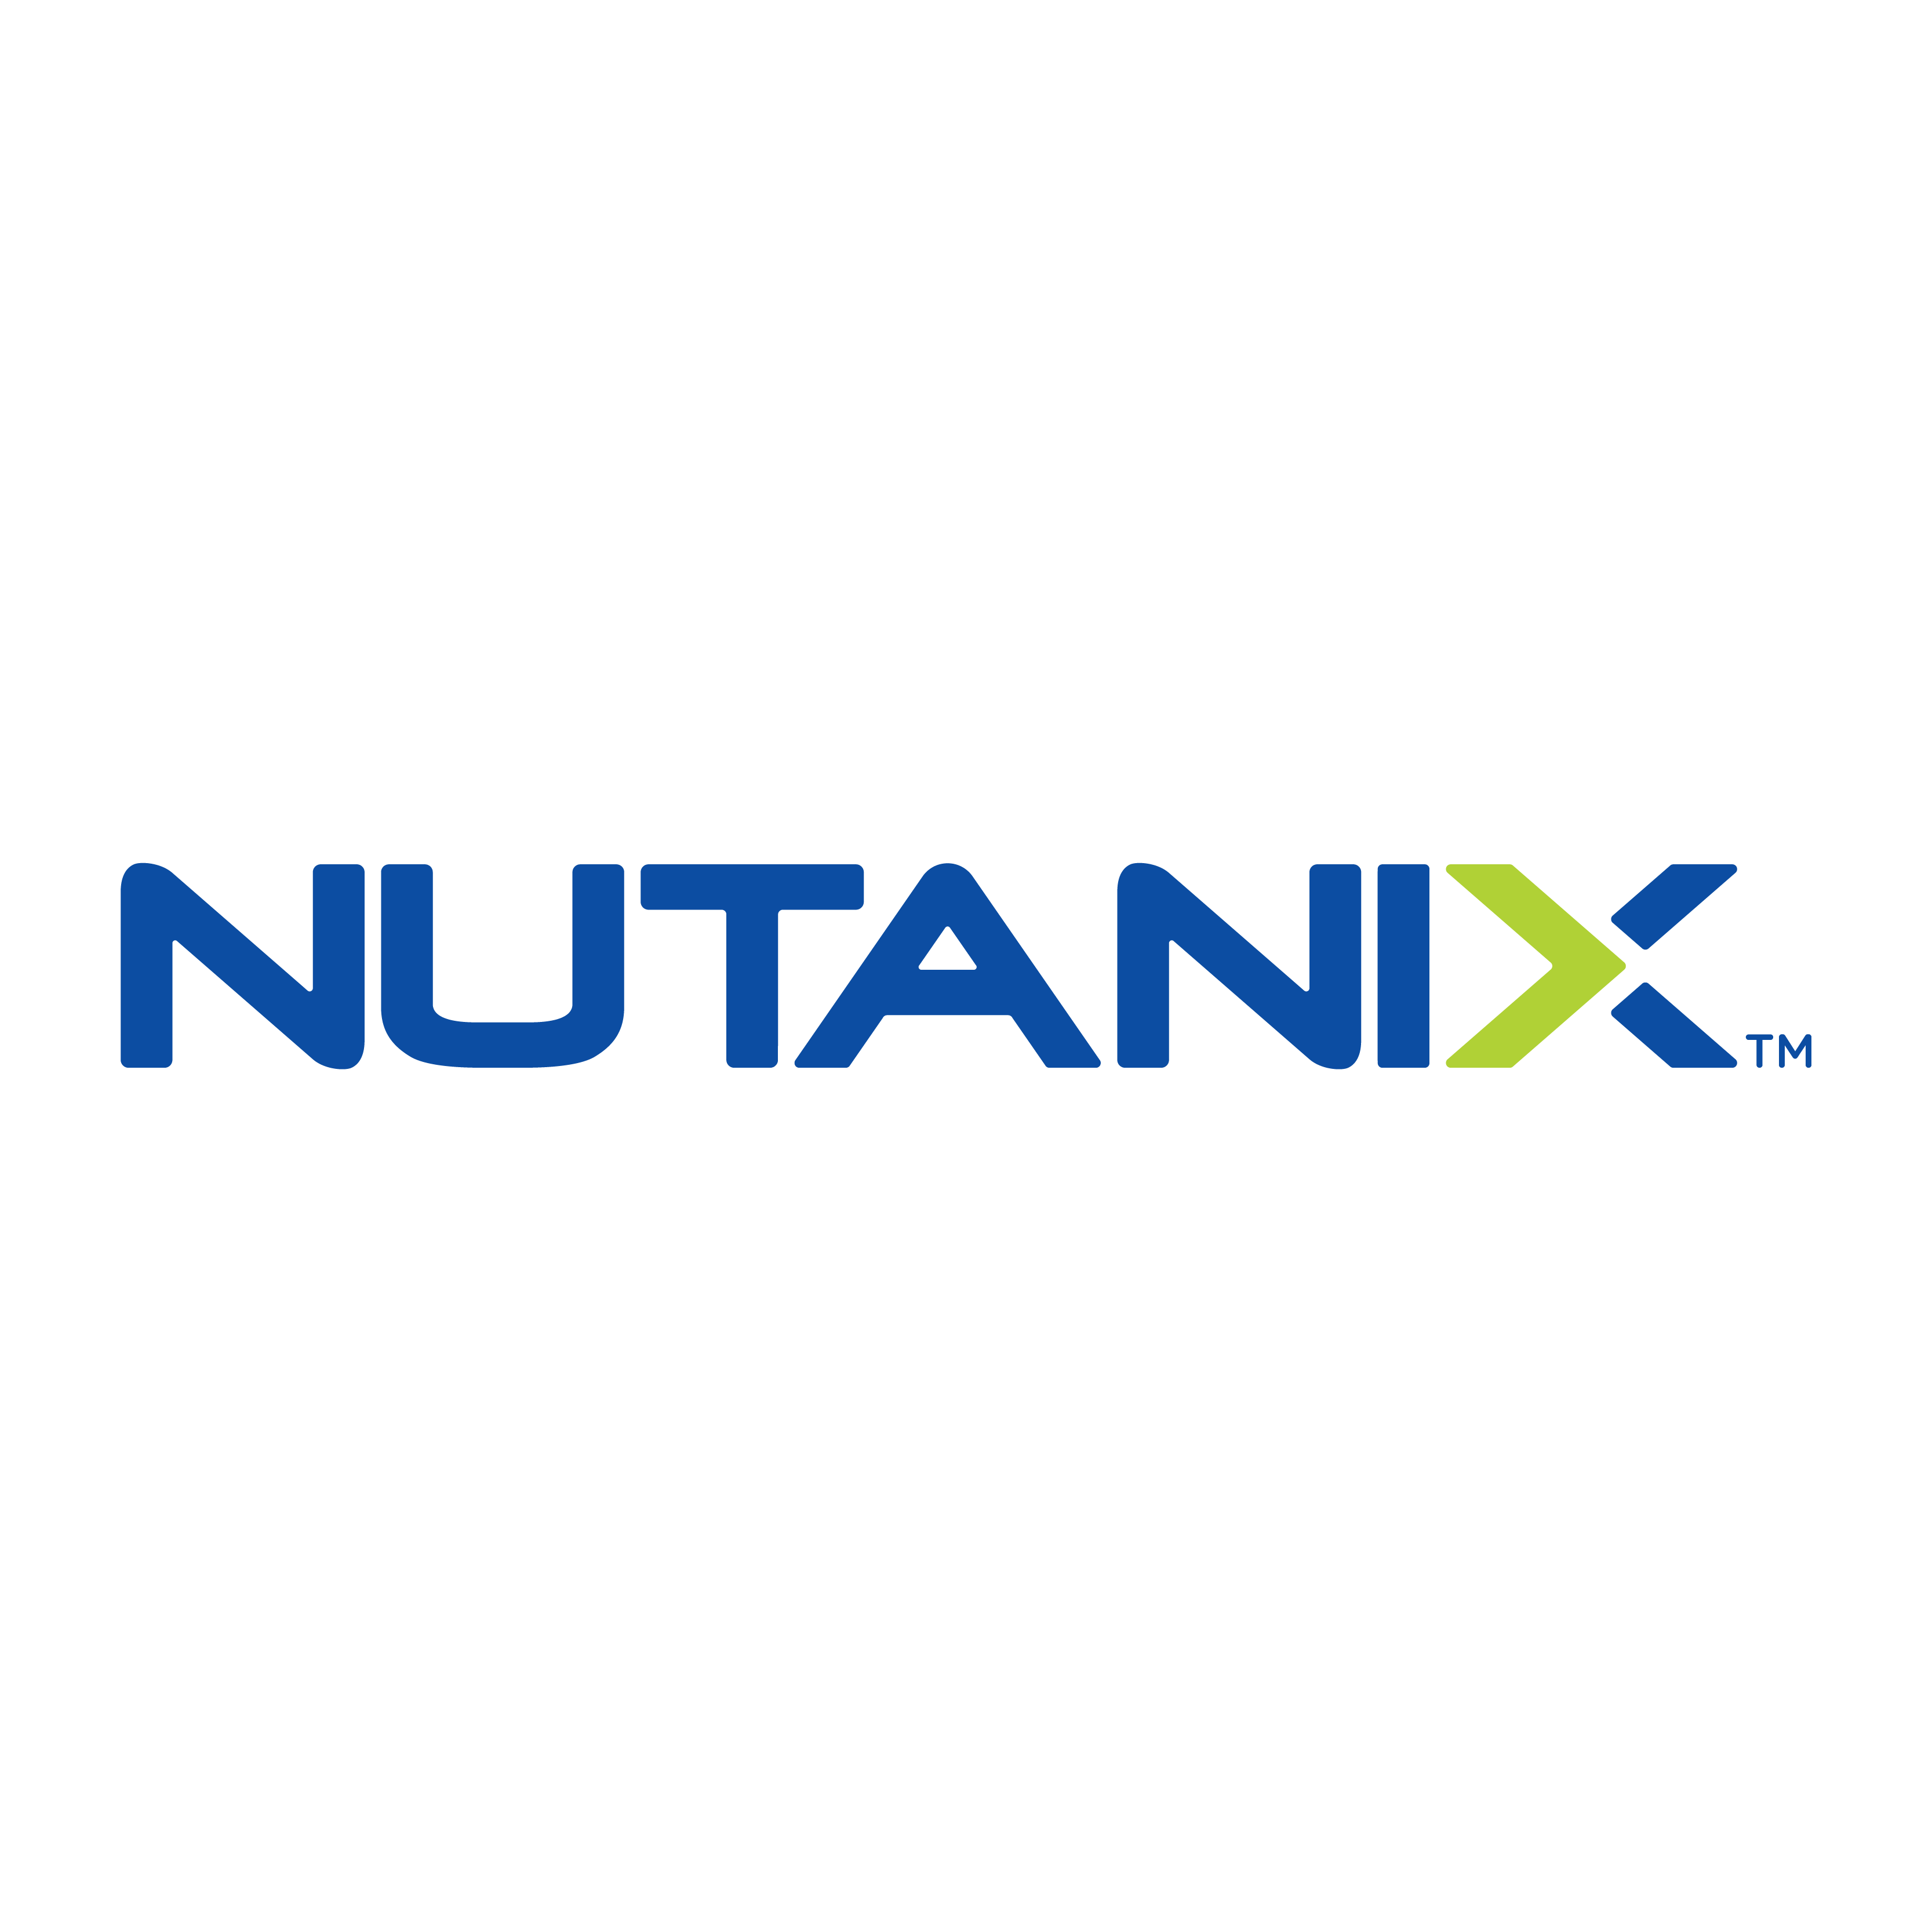 Nutanix_logo